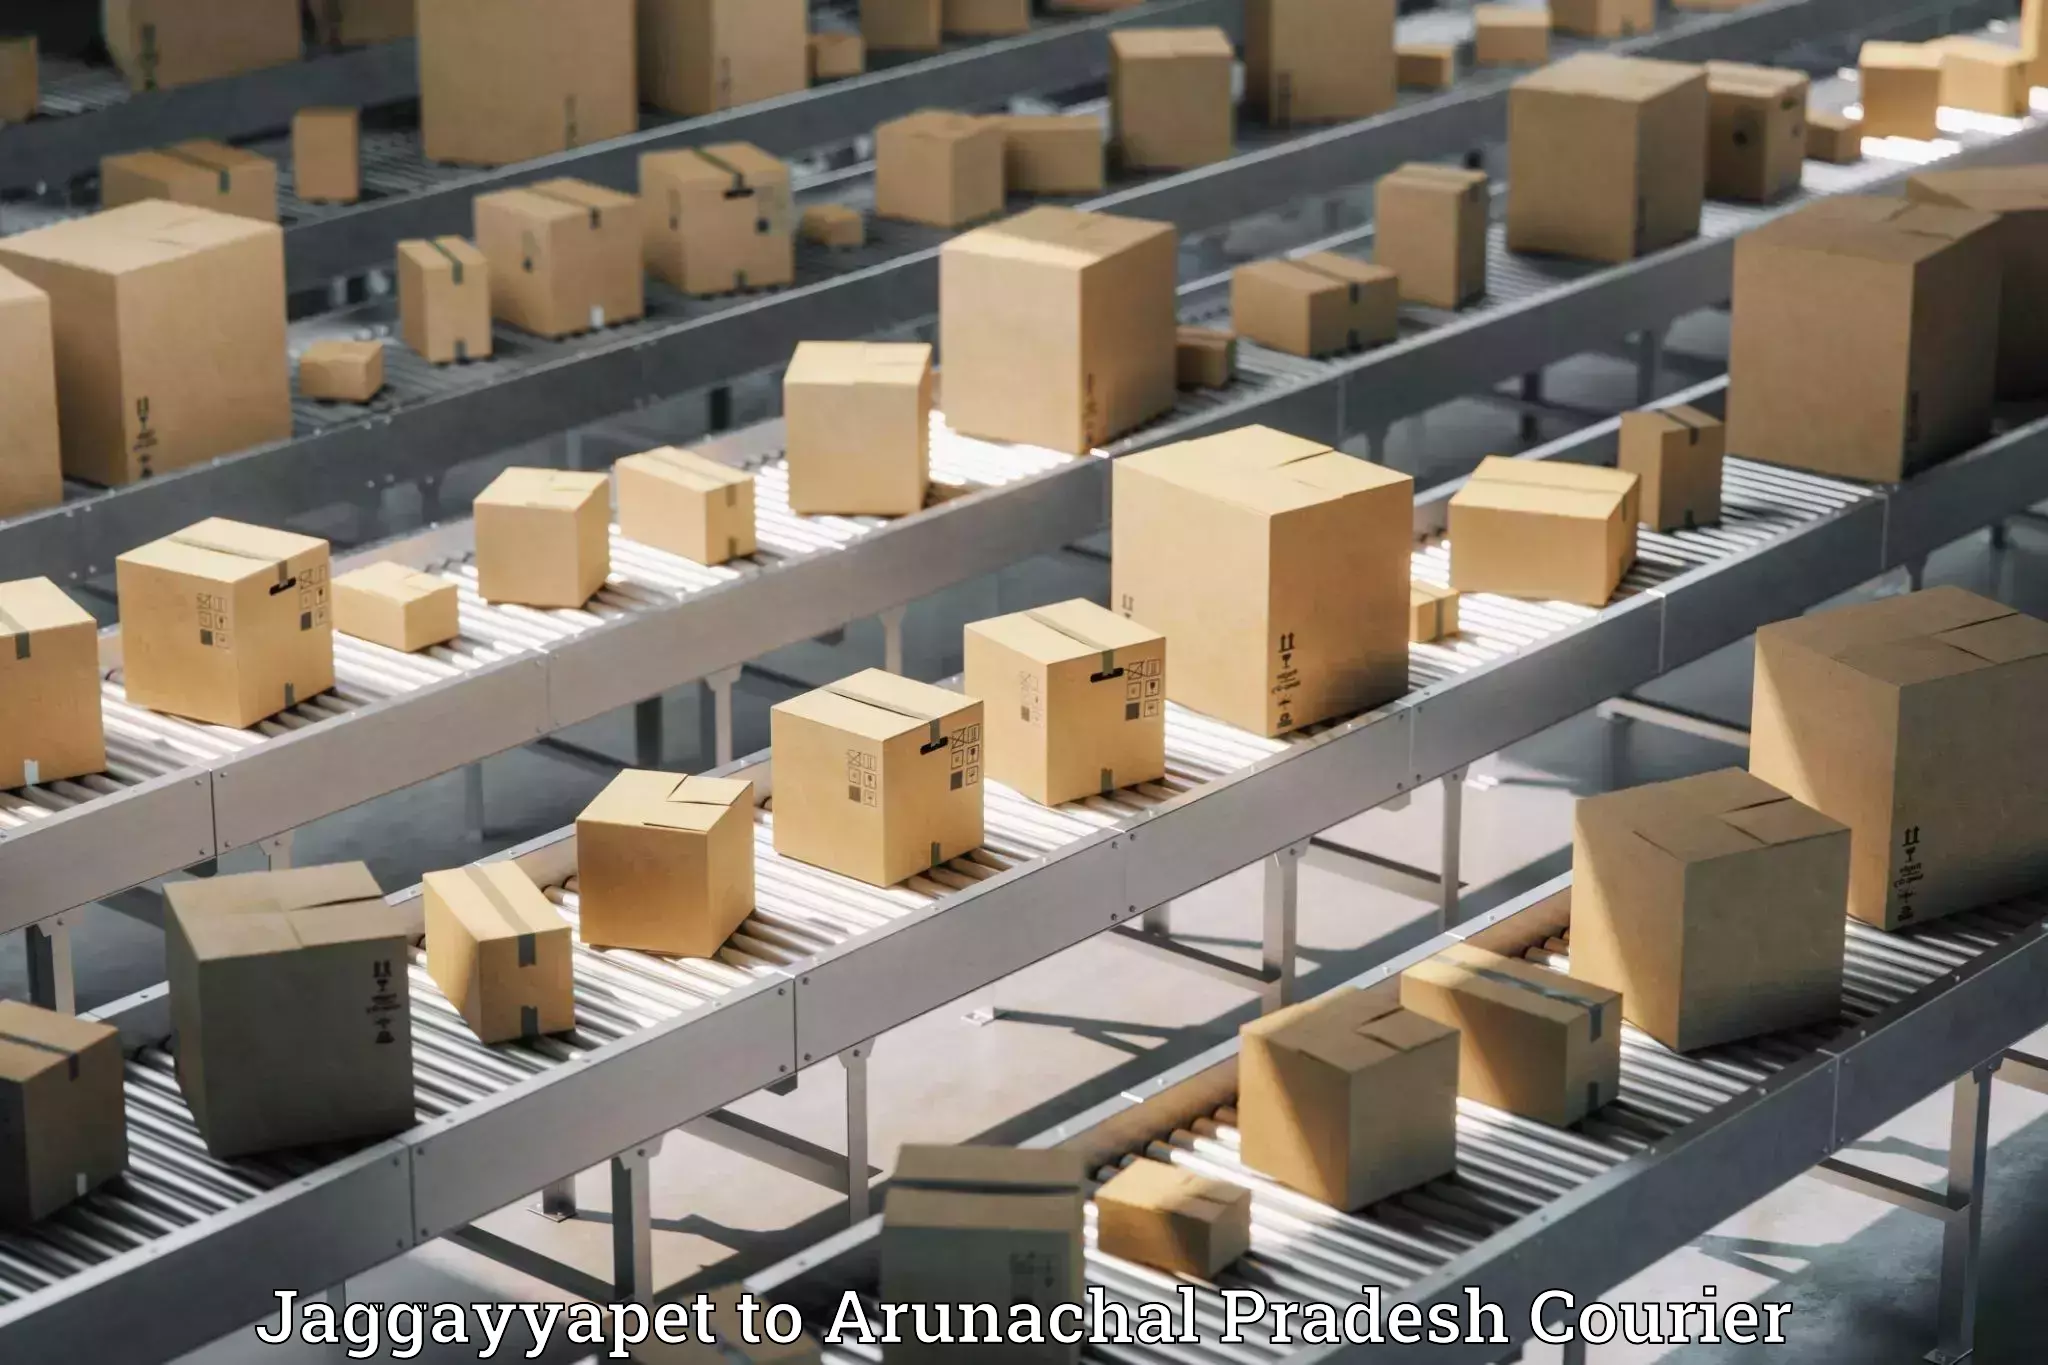 Global shipping solutions Jaggayyapet to Changlang